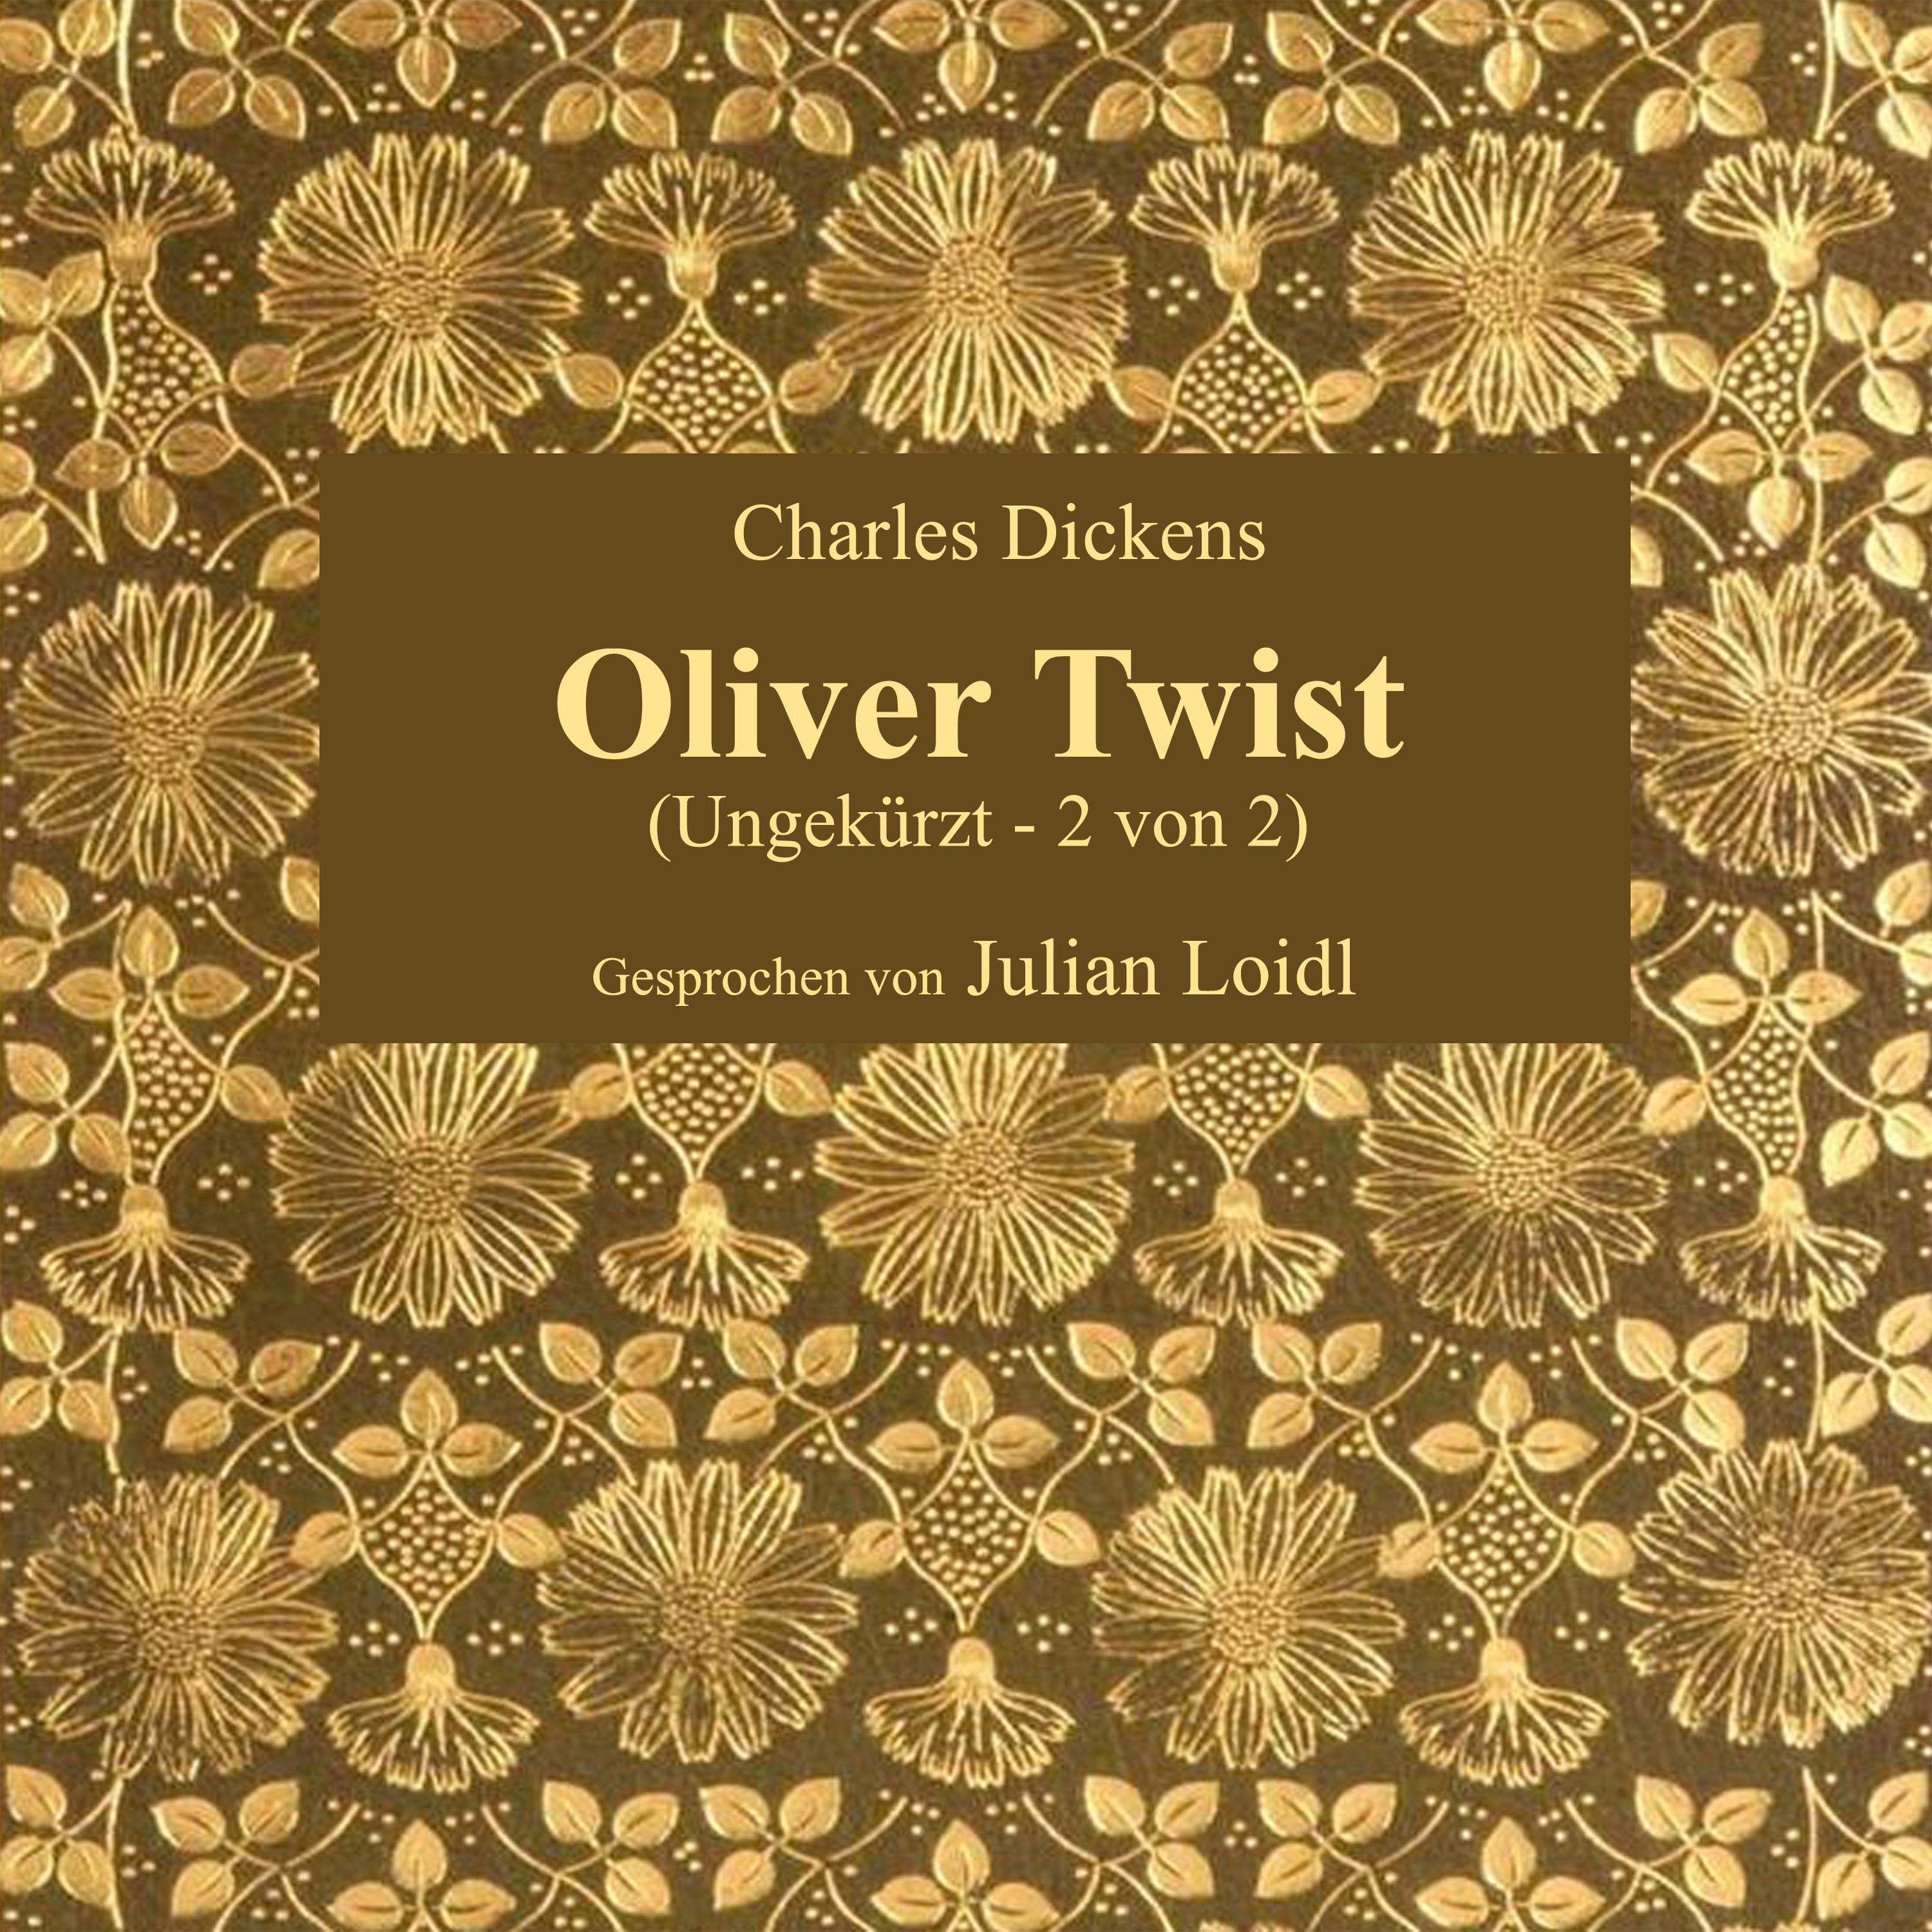 Kapitel 41: Oliver Twist (Teil 1)